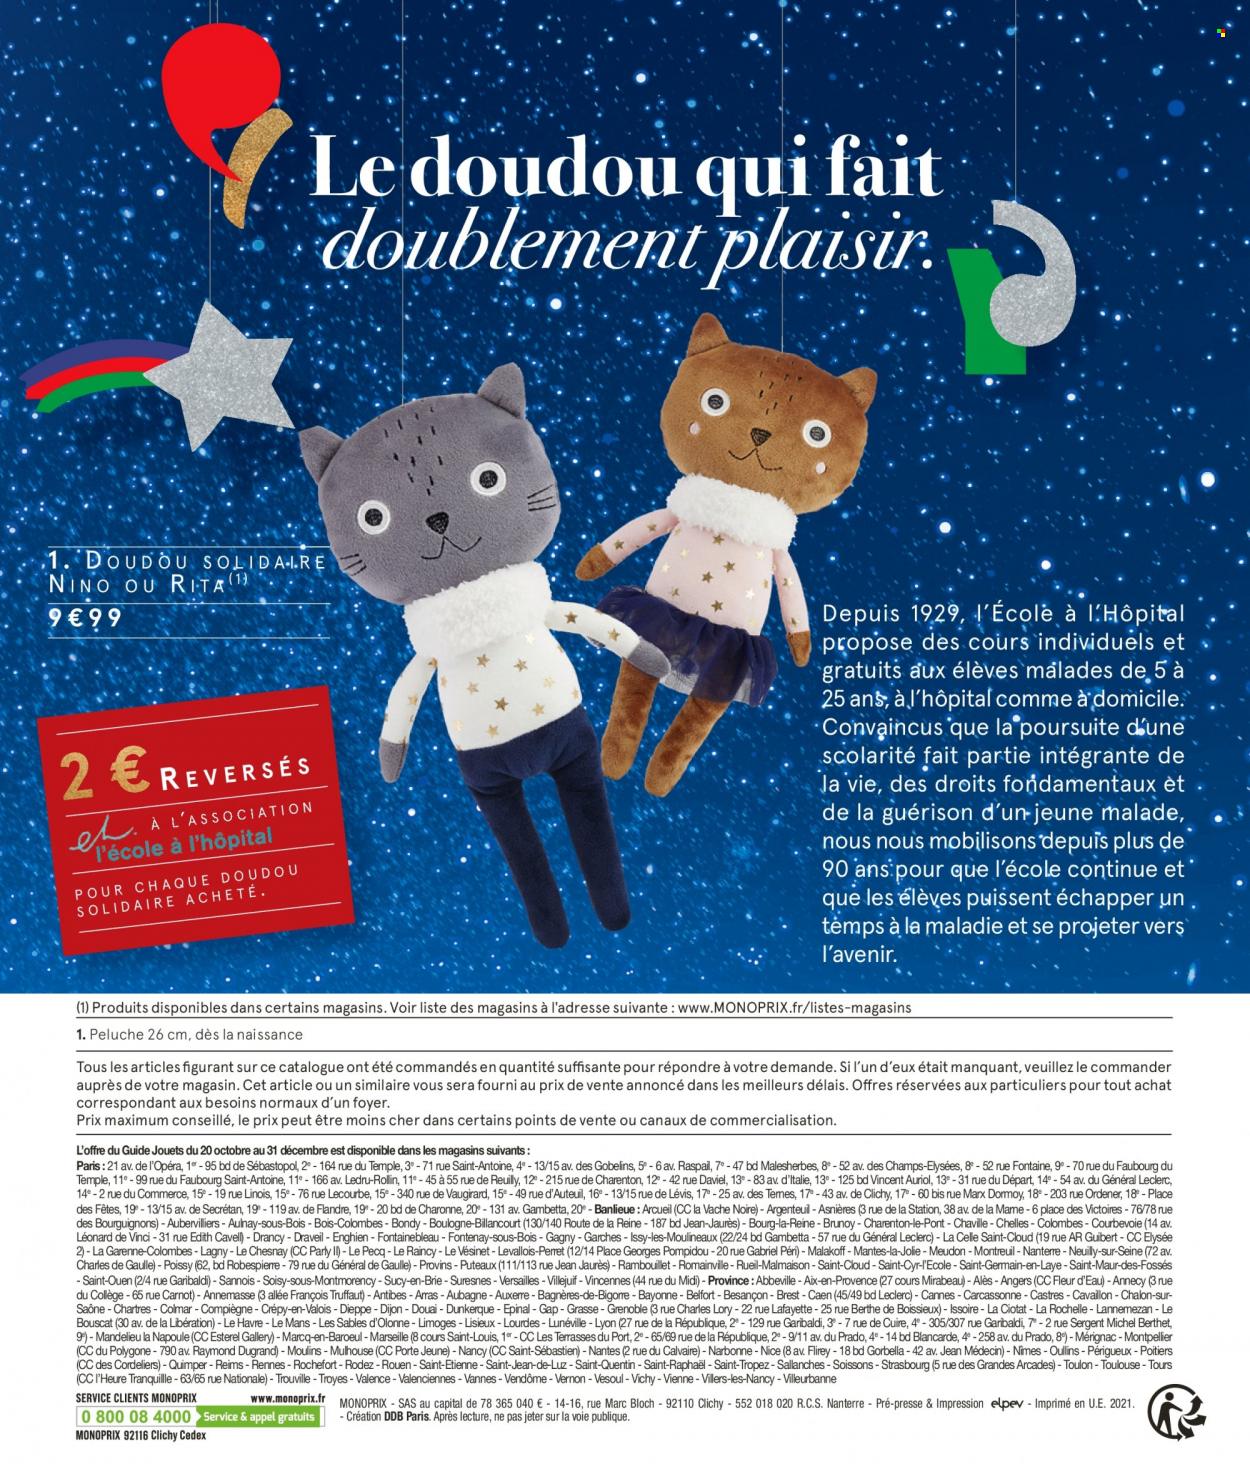 thumbnail - Catalogue Monoprix - 20/10/2021 - 31/12/2021 - Produits soldés - Vendôme, Vichy, Levis, peluche, fleur. Page 44.